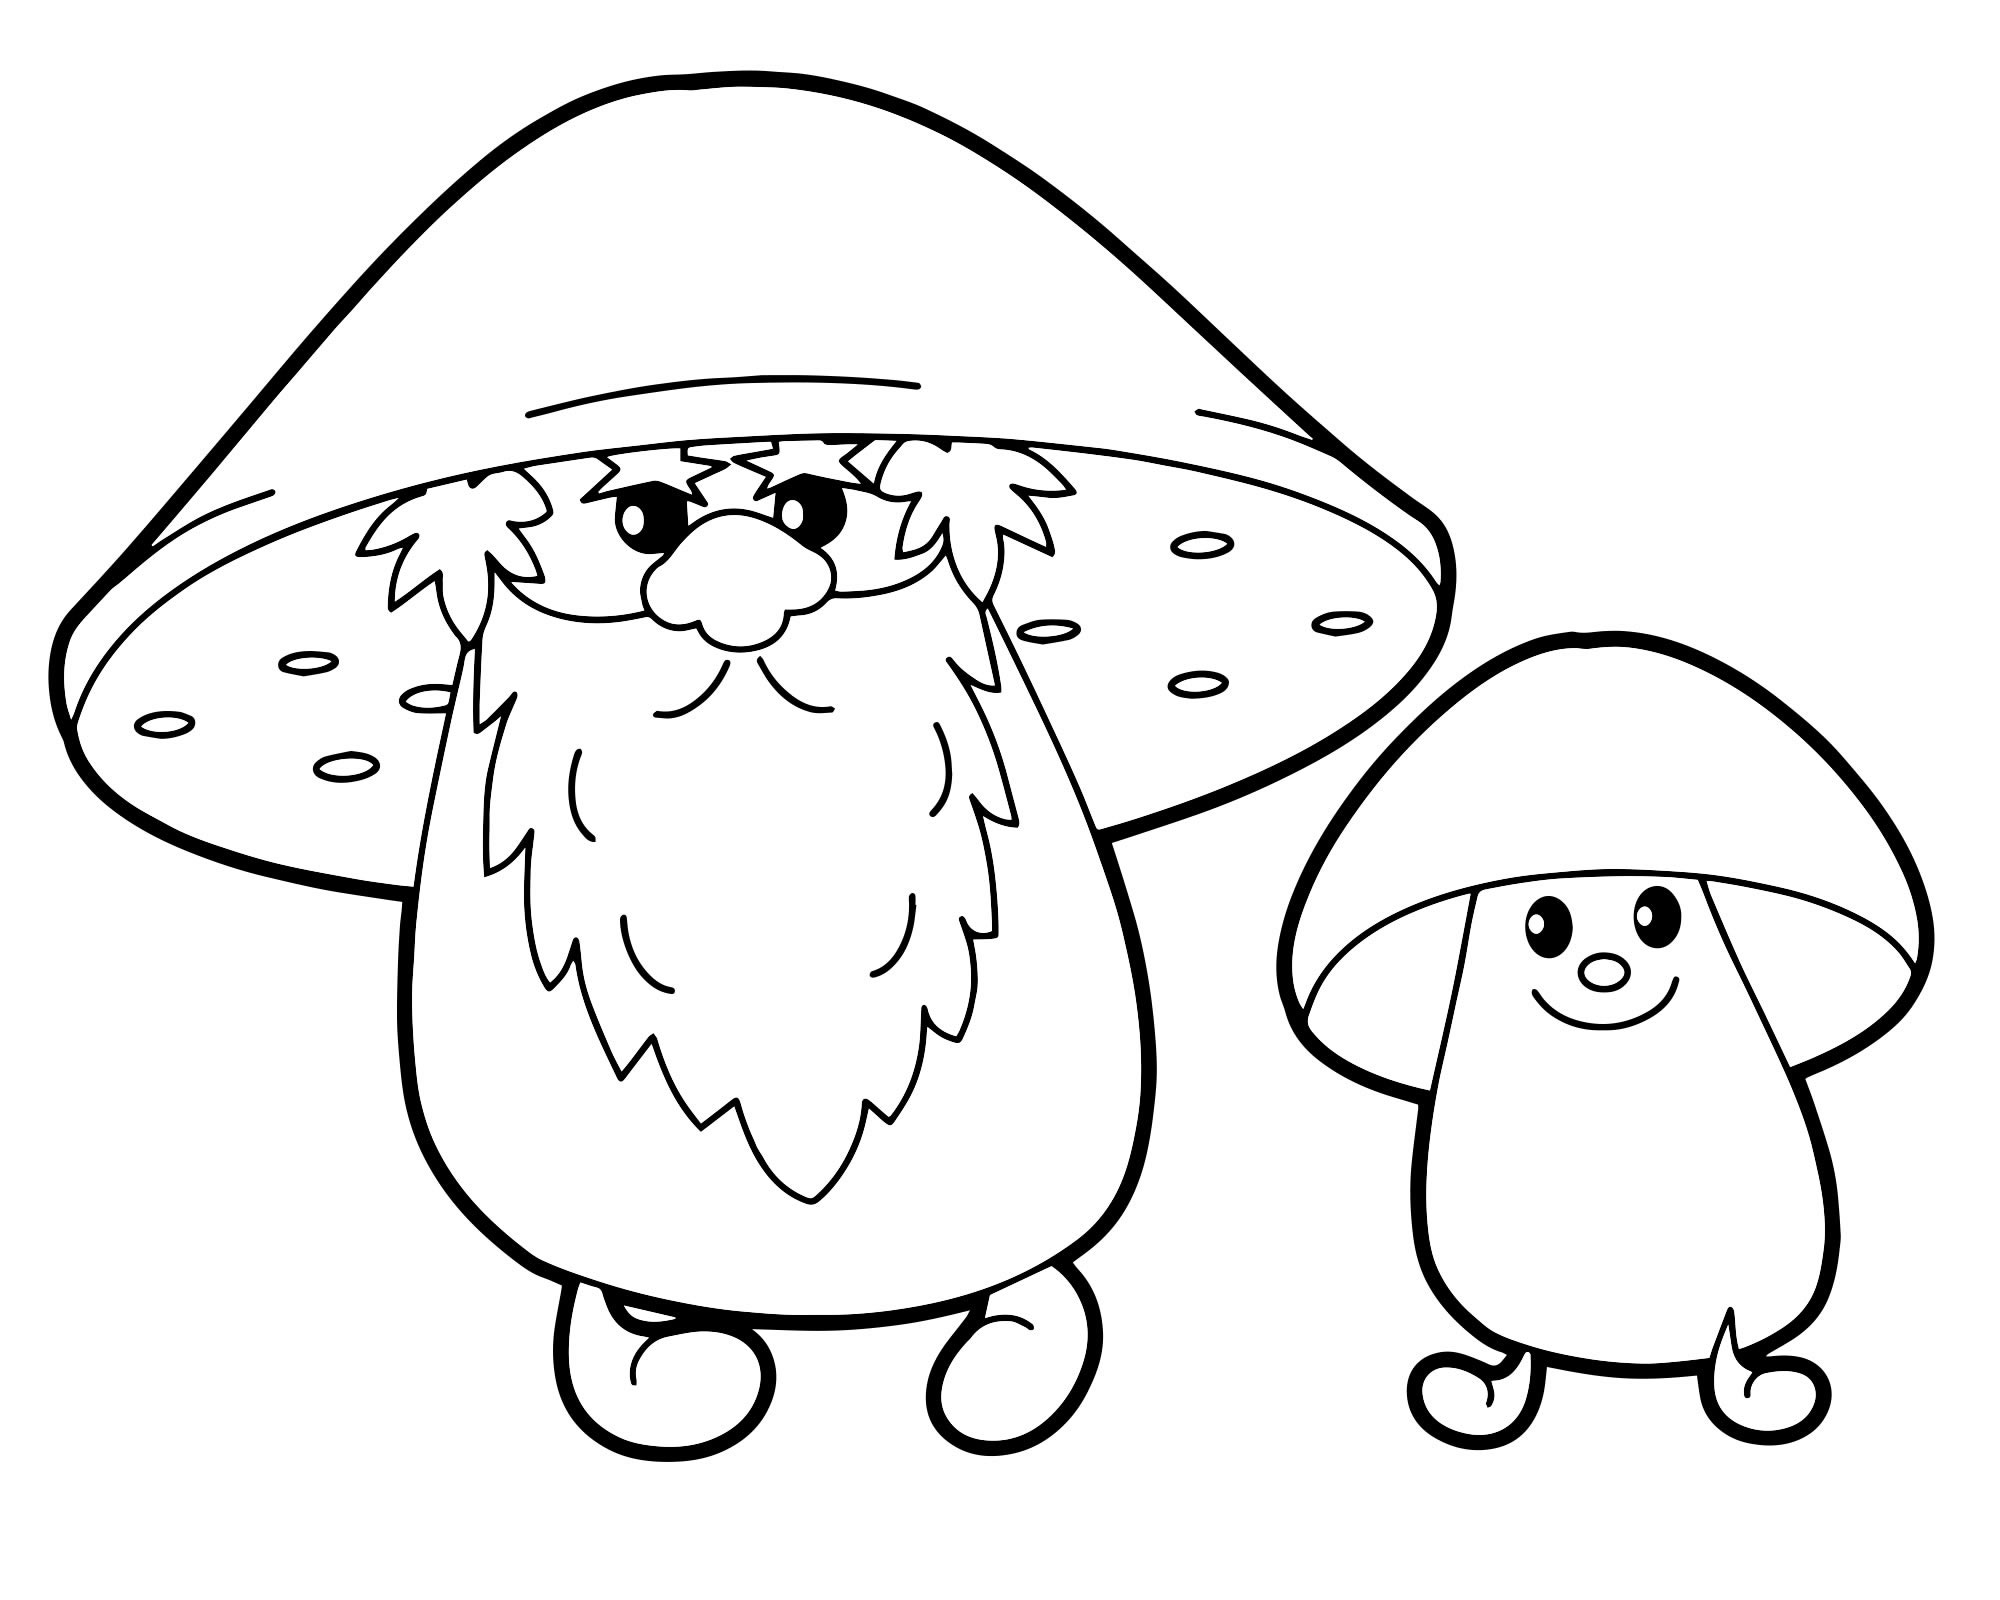 Рисунки грибов для детей в детском саду (51 фото)